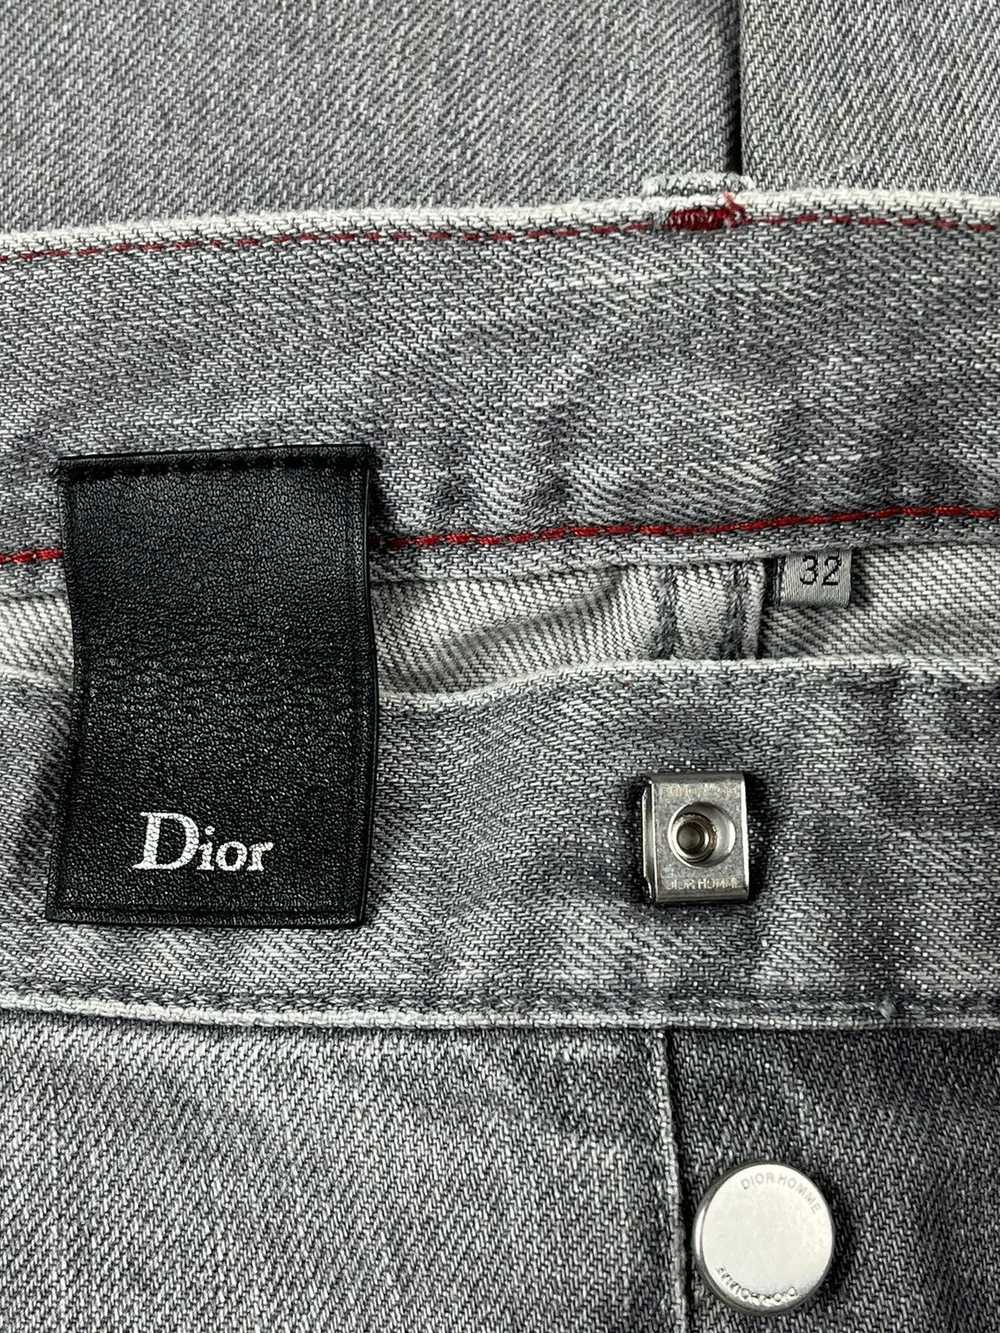 Dior Dior Homme Light Grey Denim Jeans - image 8